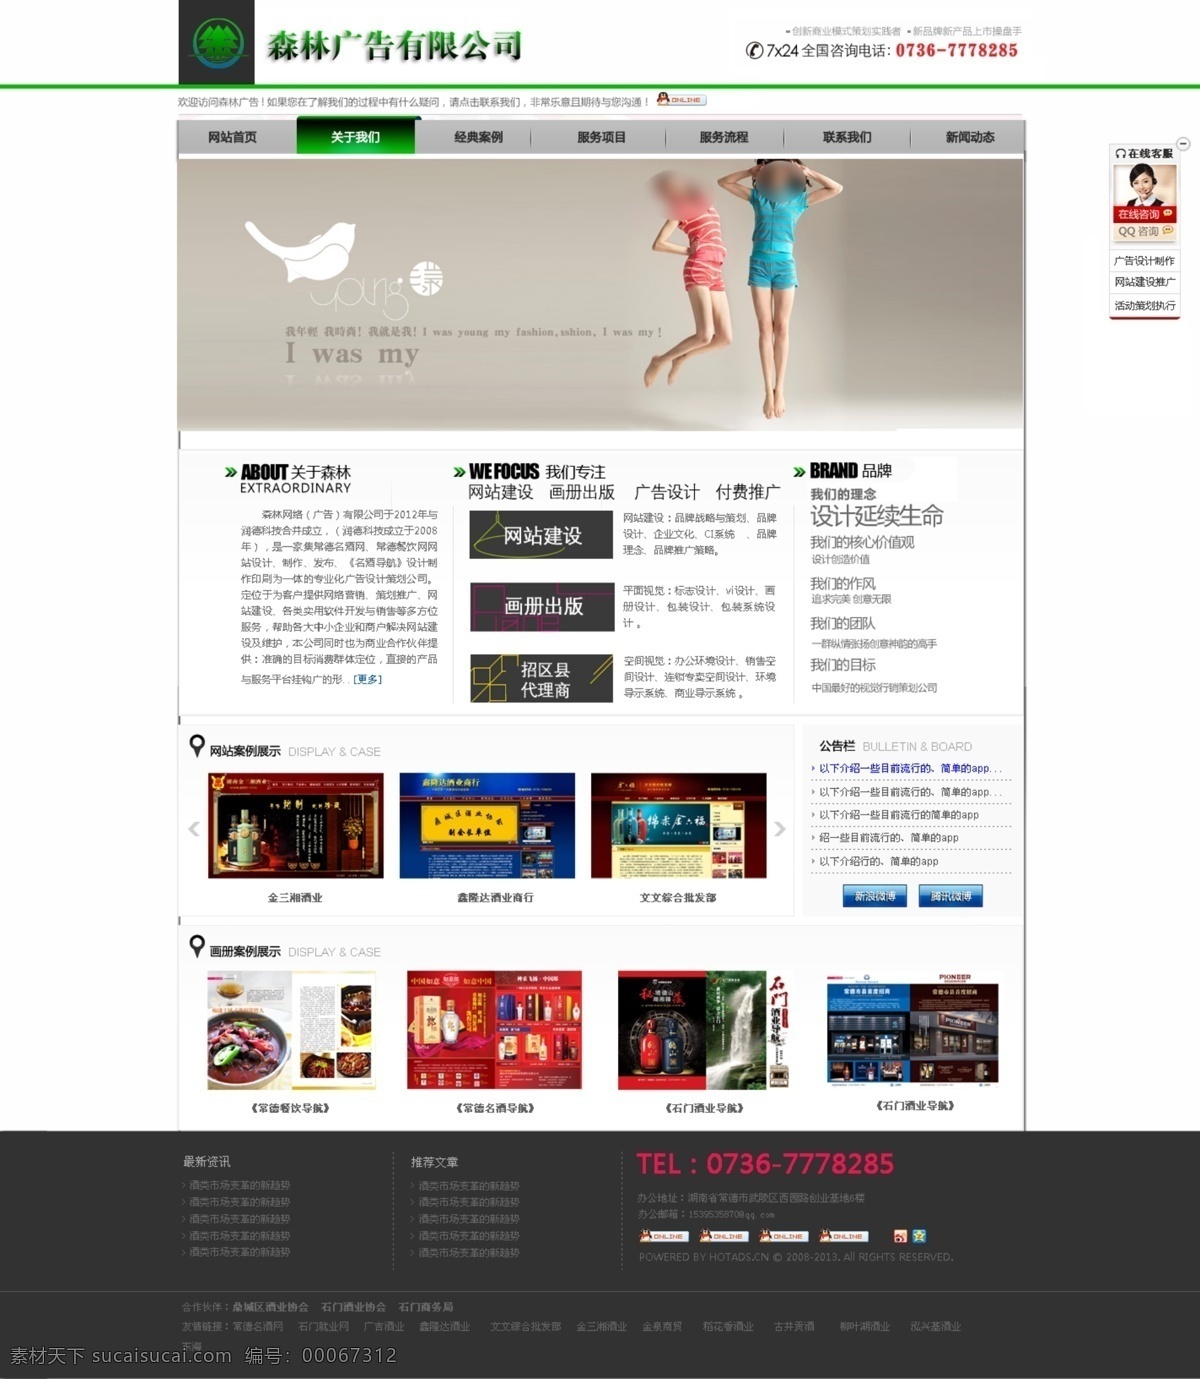 广告公司 网站 高级 公司 广告 广告公司网站 网页模板 源文件 中文模板 首页 矢量图 现代科技